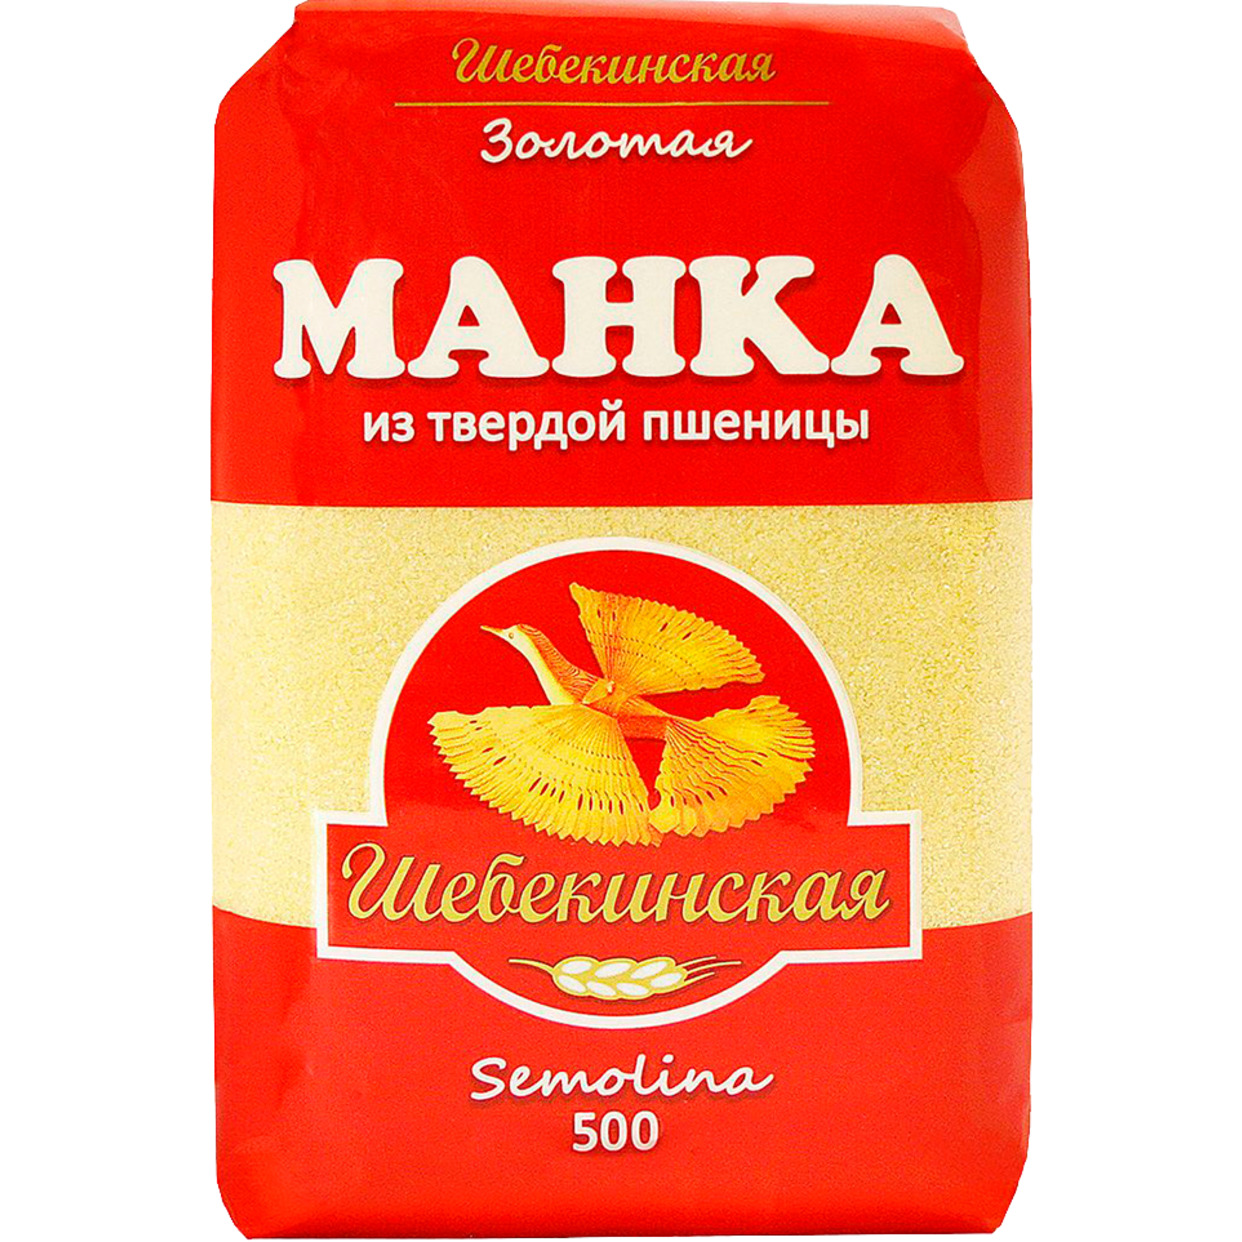 Манка Шебекинская из твердой пшеницы 500г в магазине Пятёрочка